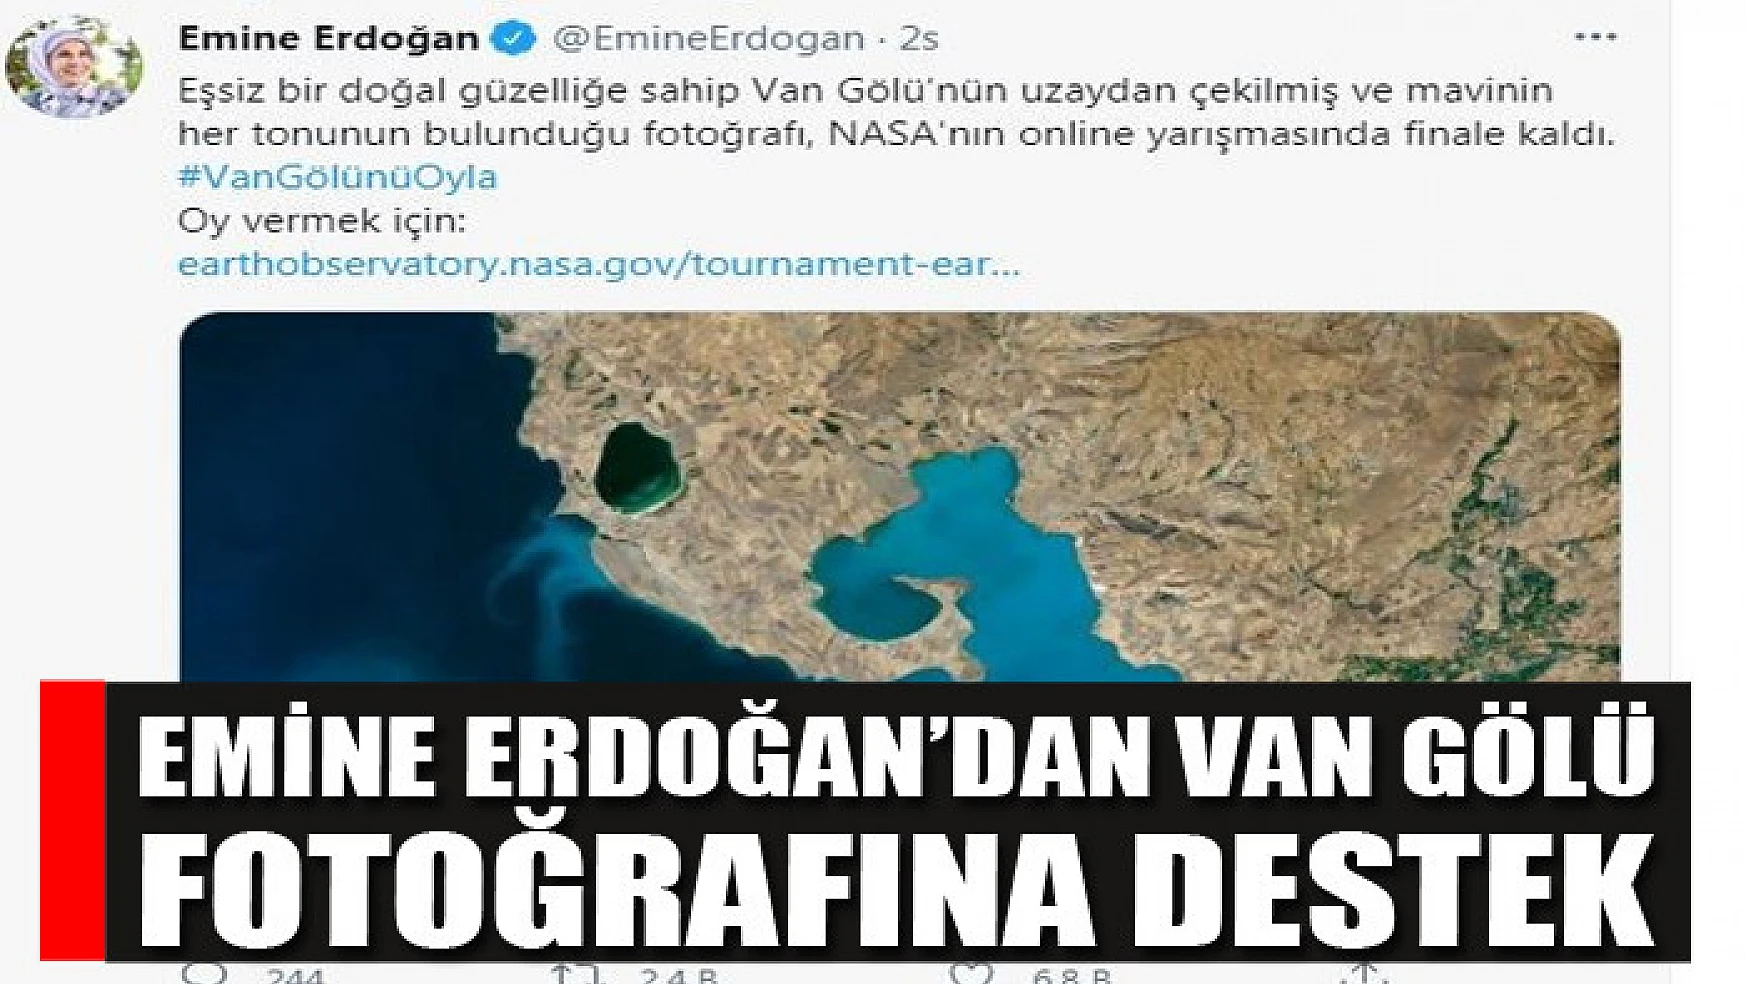 Emine Erdoğan'dan Van Gölü fotoğrafına destek